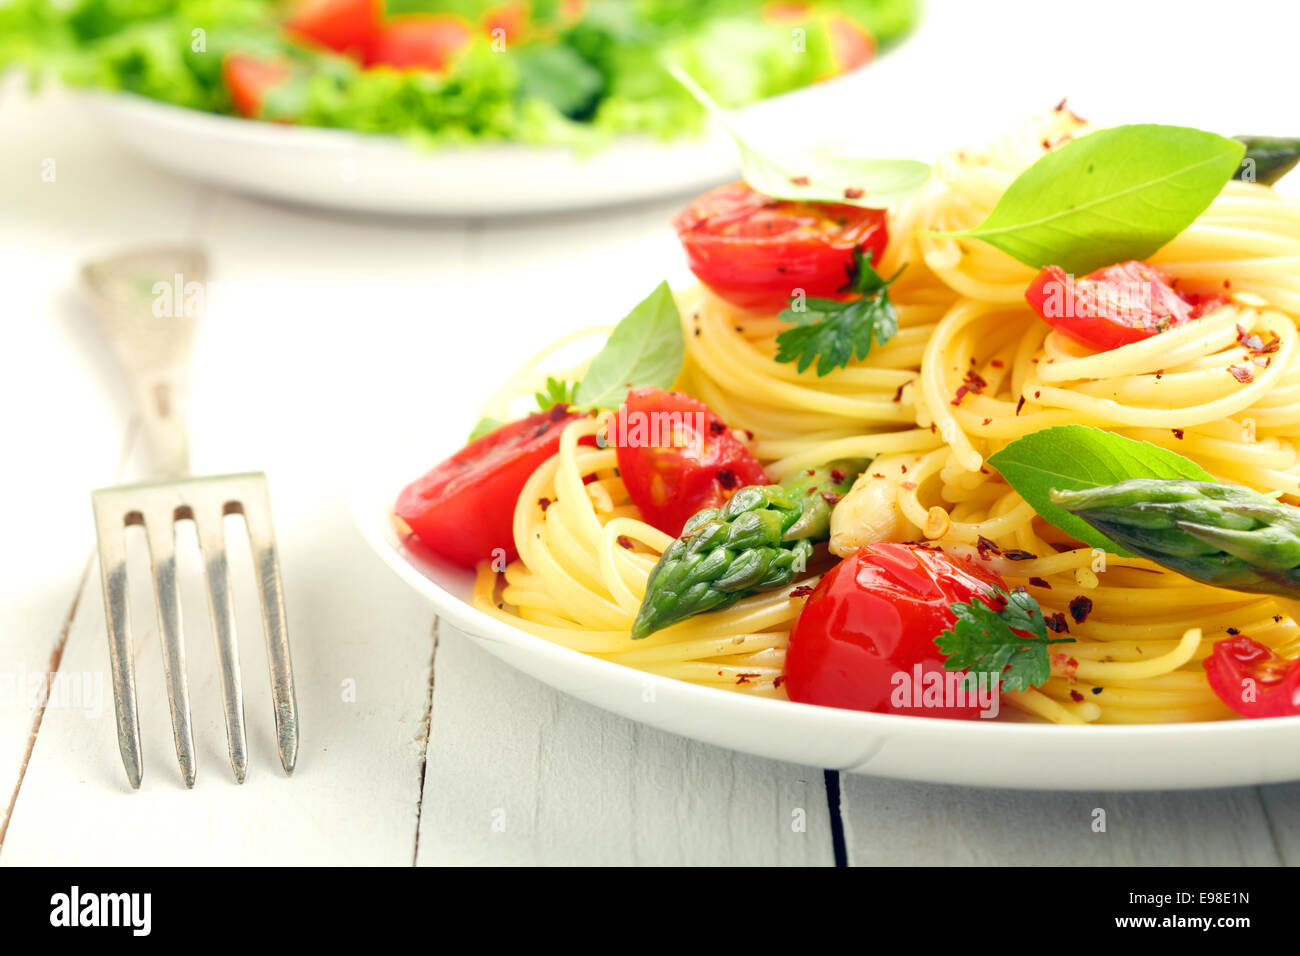 Avvolte cotto italiano spaghetti conditi con pomodoro e condito con prezzemolo fresco tritato e le foglie di basilico Foto Stock